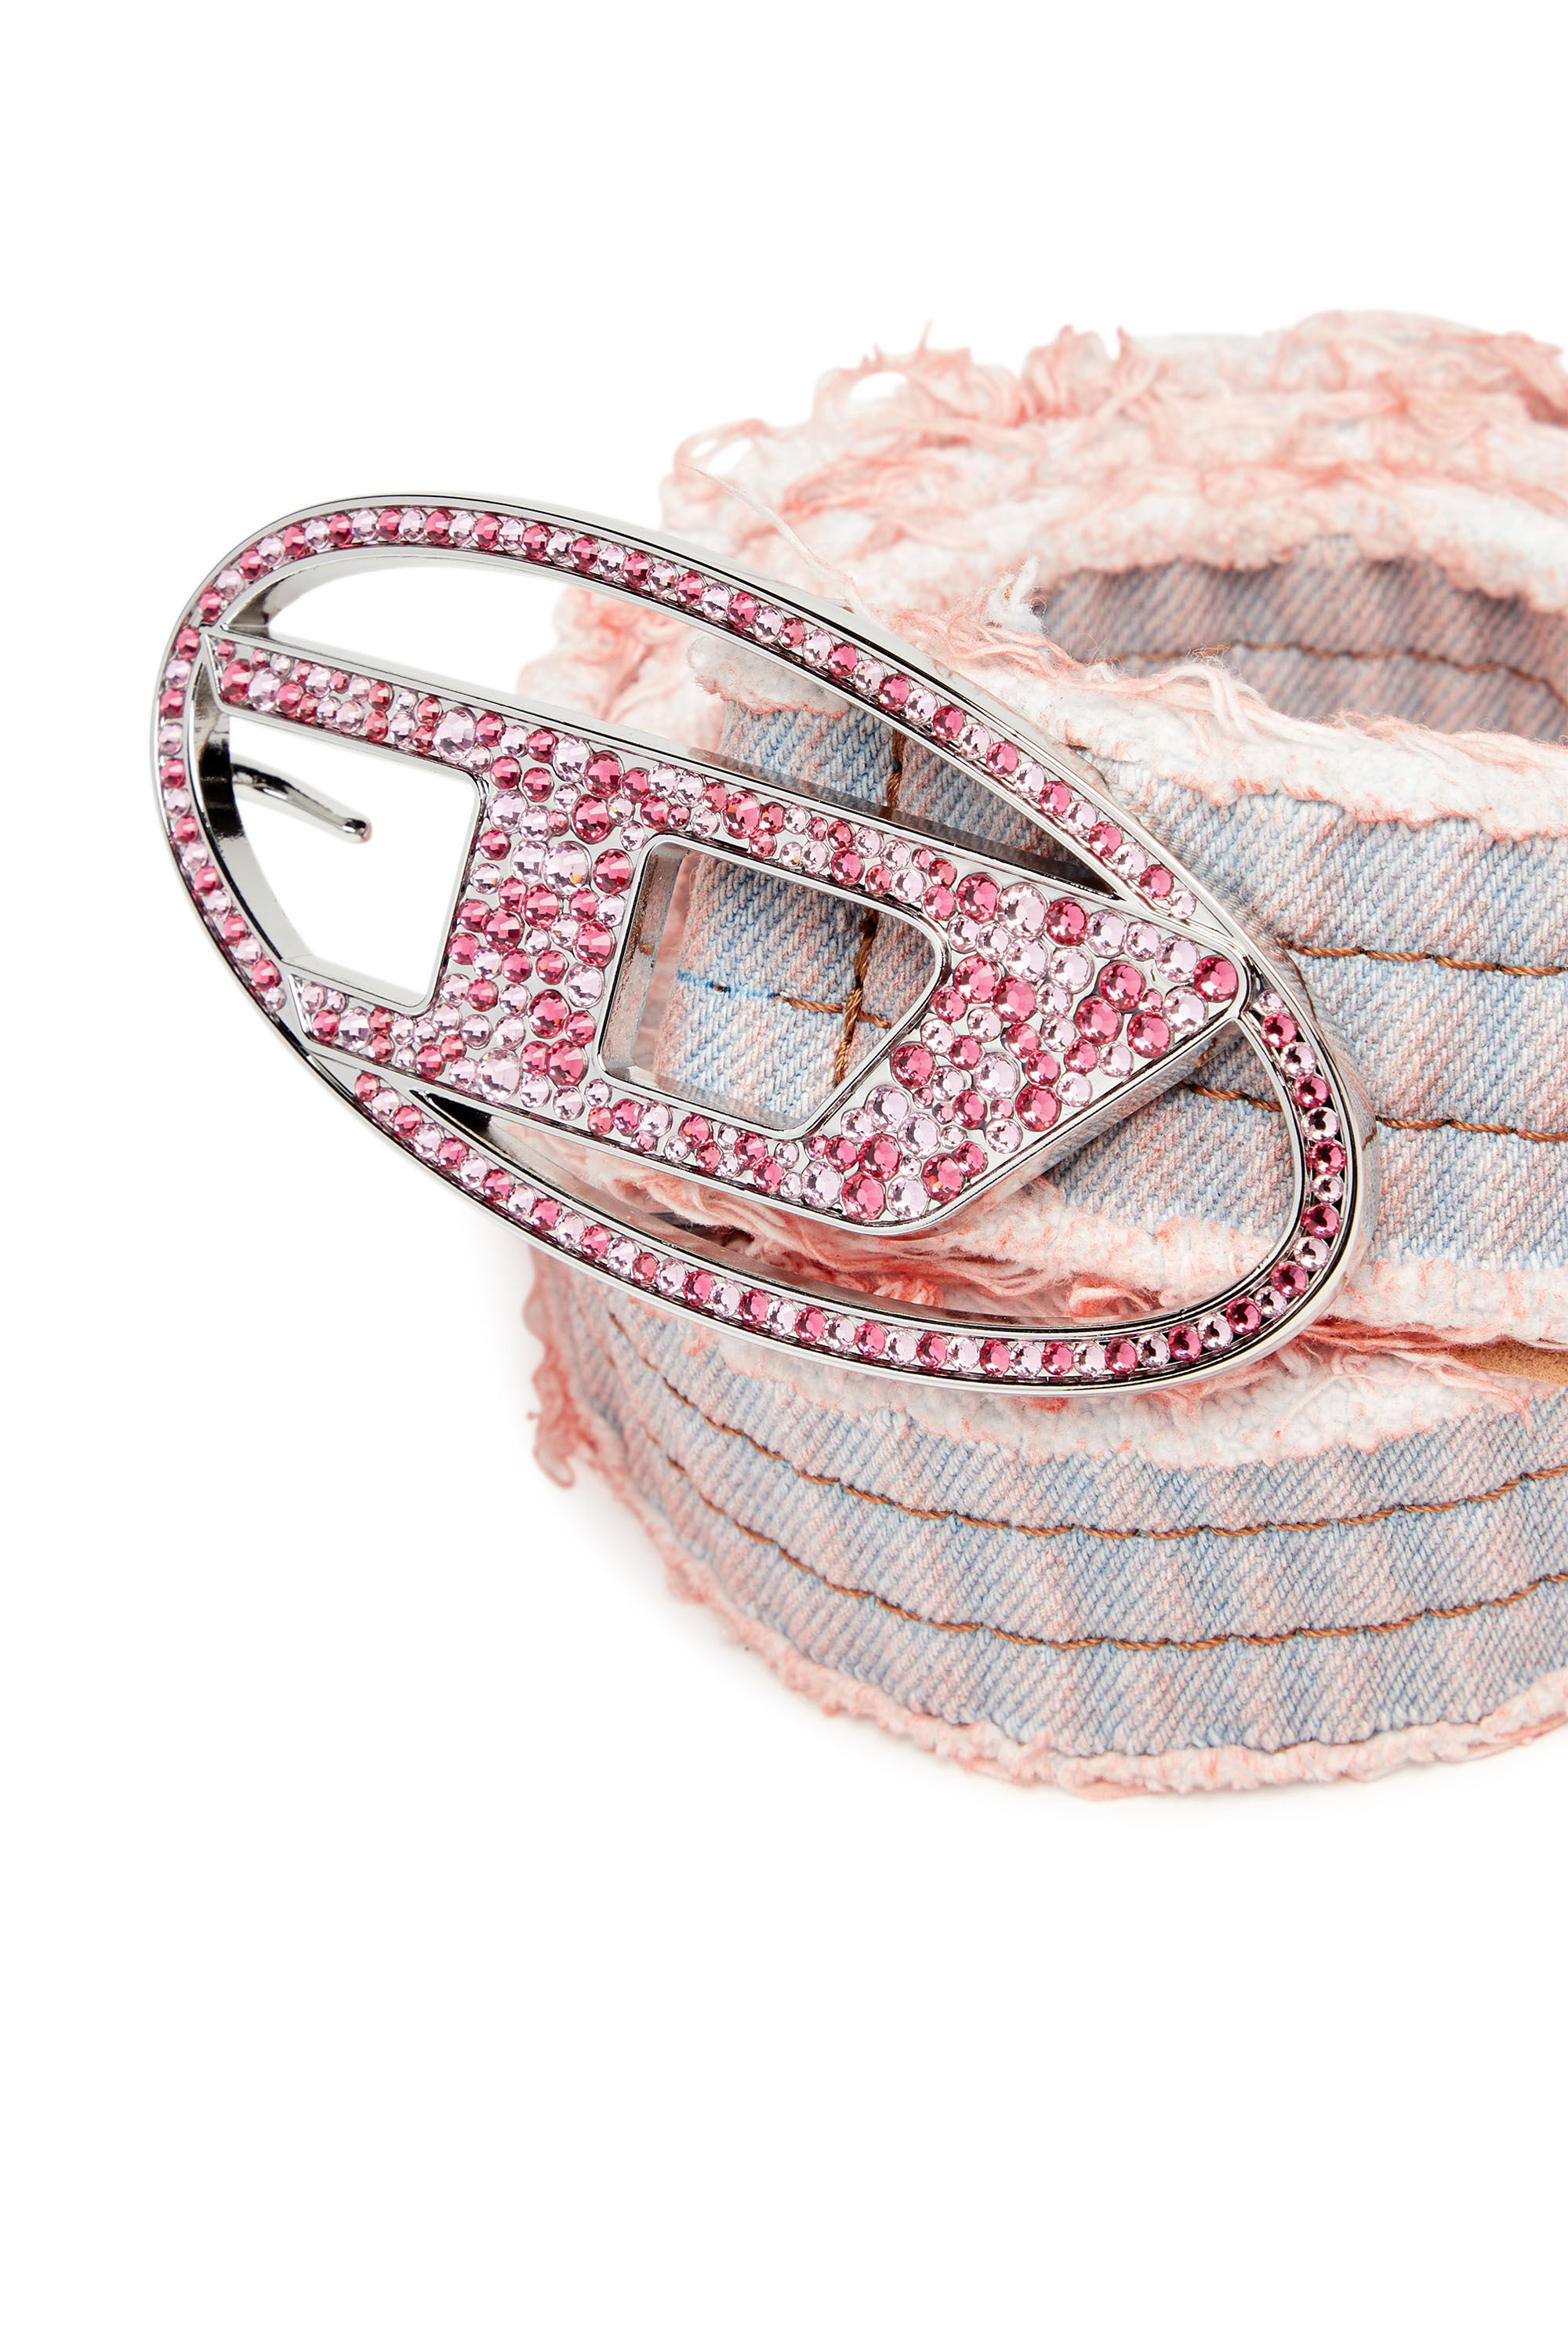 Women's Denim belt with rhinestone logo buckle | Pink | Diesel